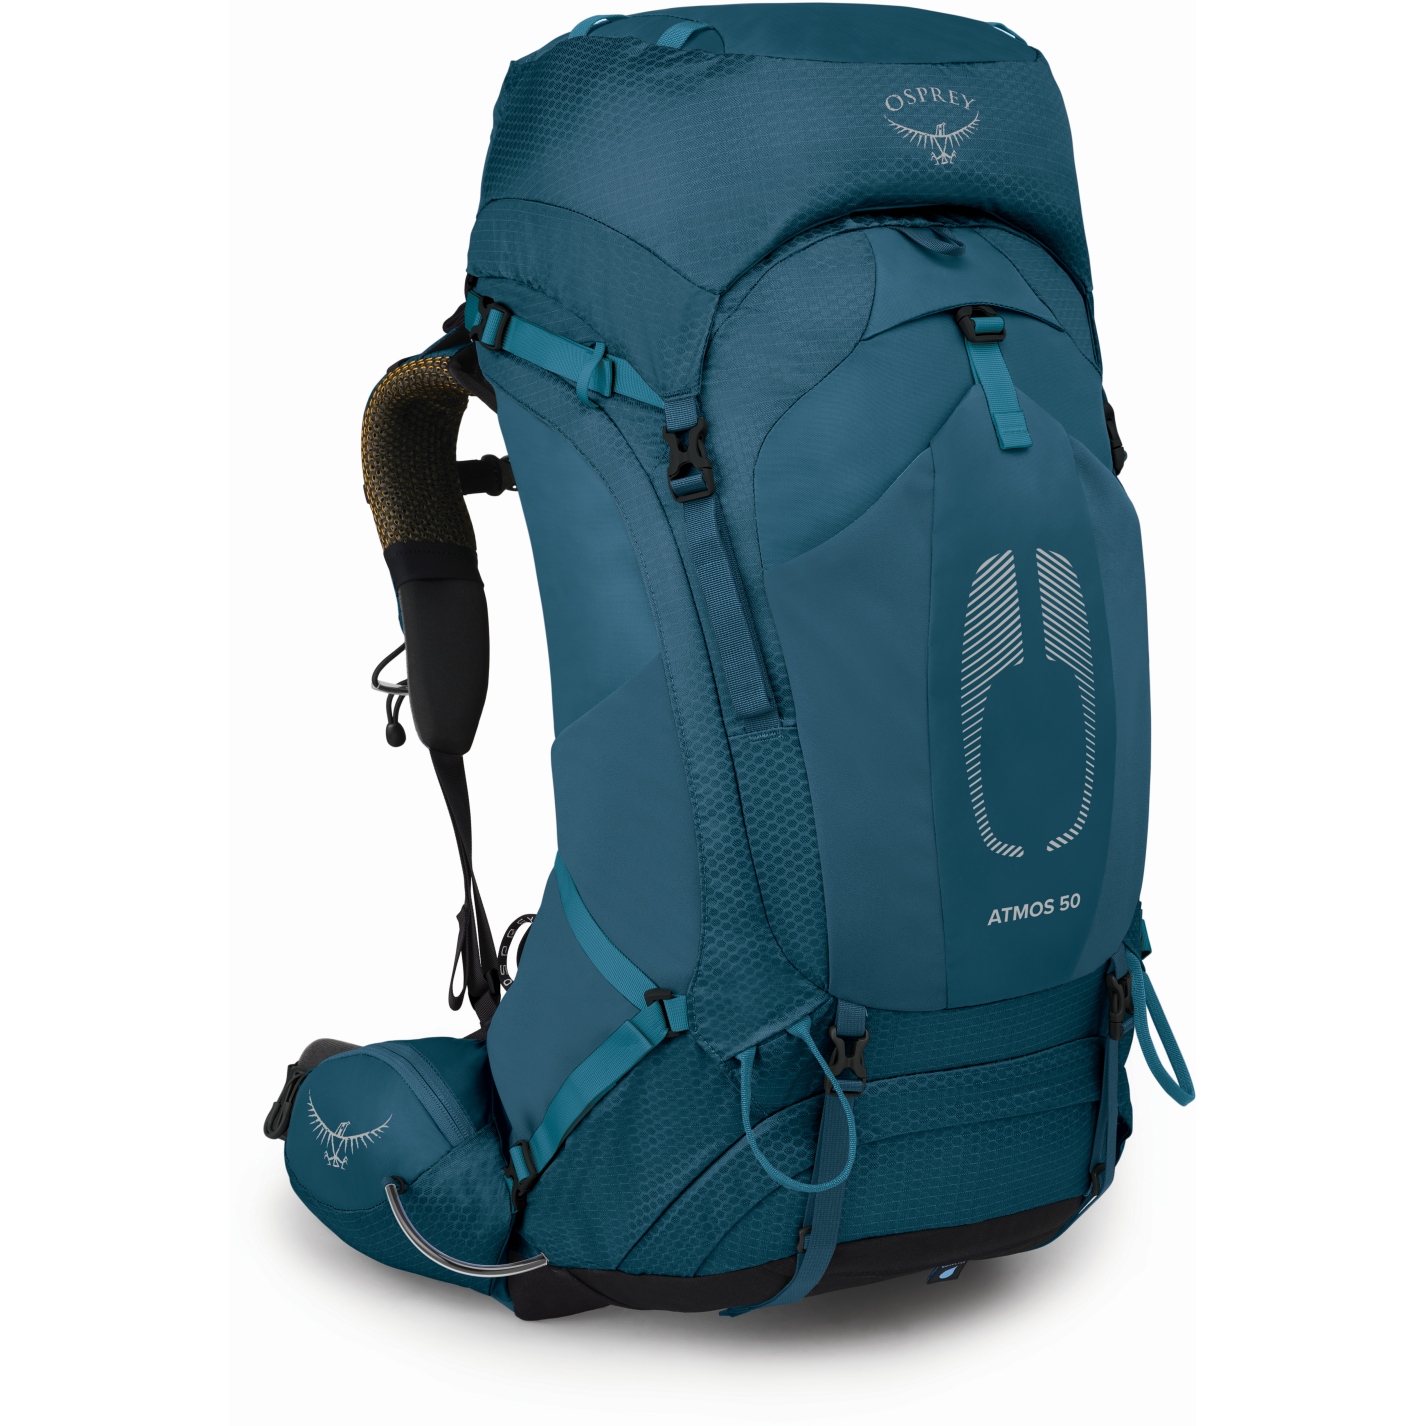 Productfoto van Osprey Atmos AG 50 Backpack - Venture Blue